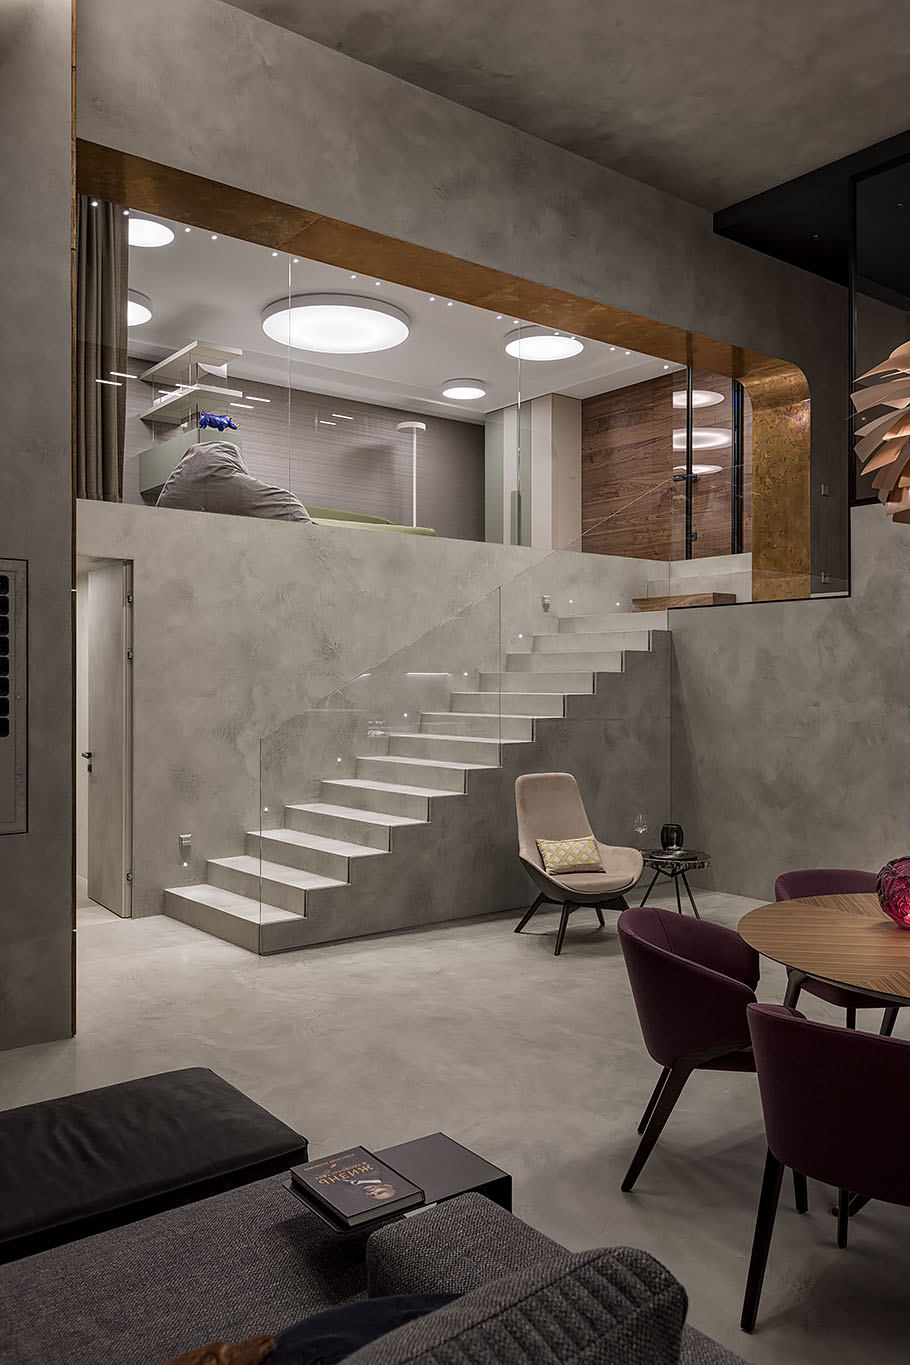 Luksusowy apartament z mikrocementem na ścianach, schodach i podłodze.